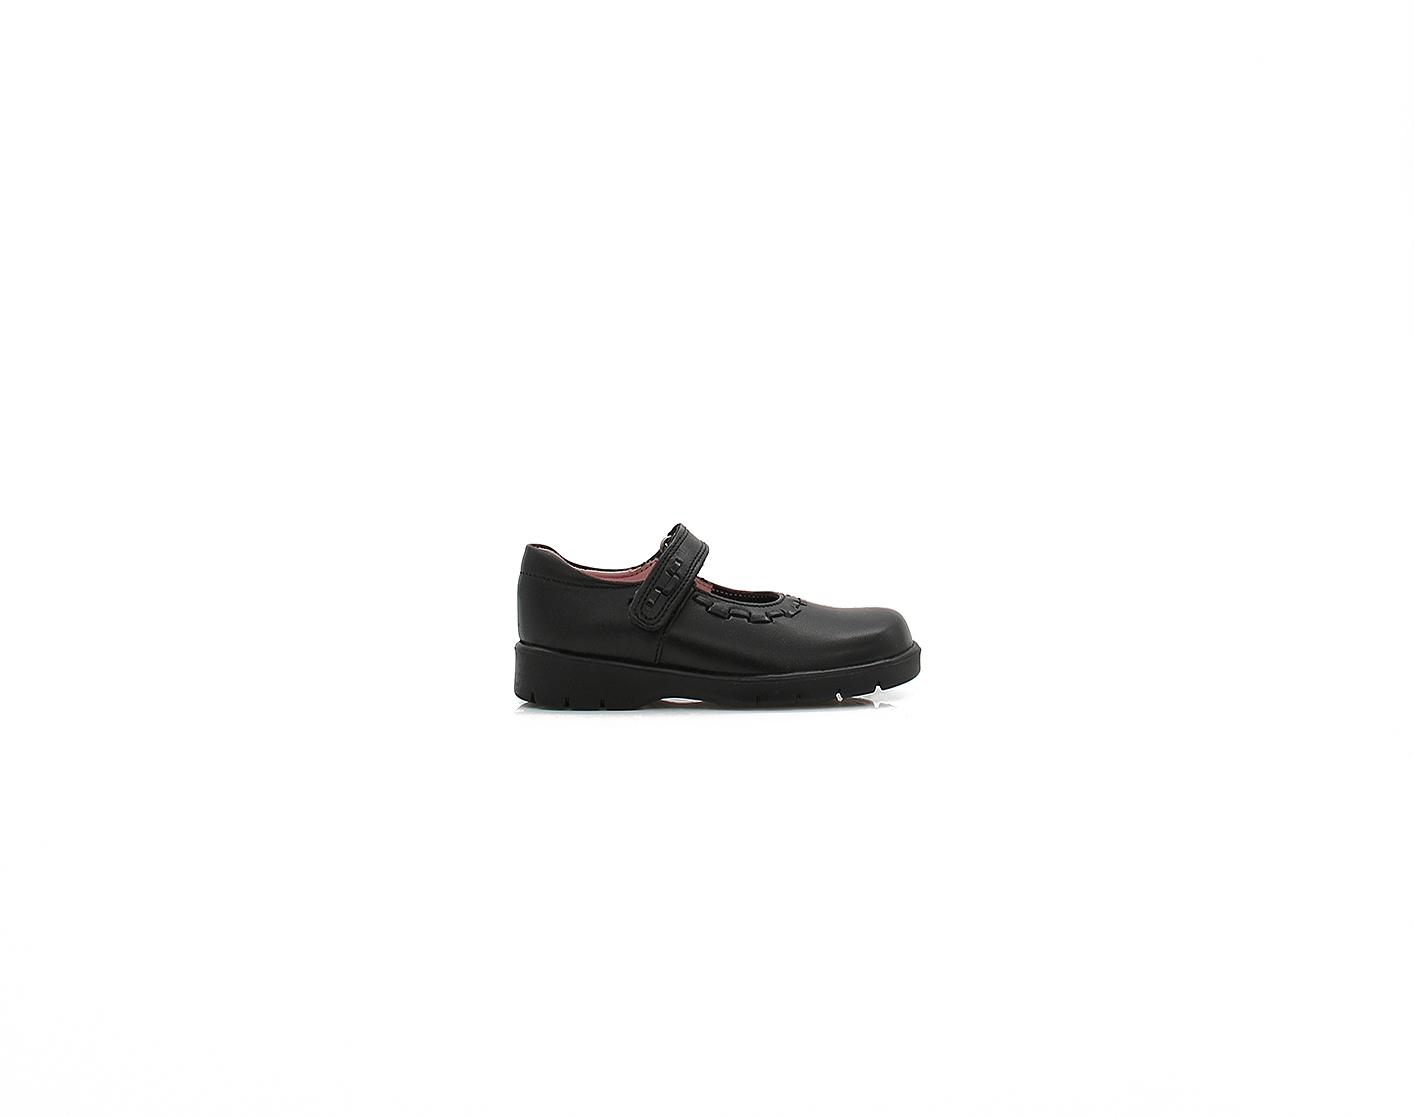 Womens Start Rite Bolero II – Black School Shoes – Velcro – Strong Heel Support – Fits Narrow Foot – Size K6 / Width F – Leather – ShoeFit